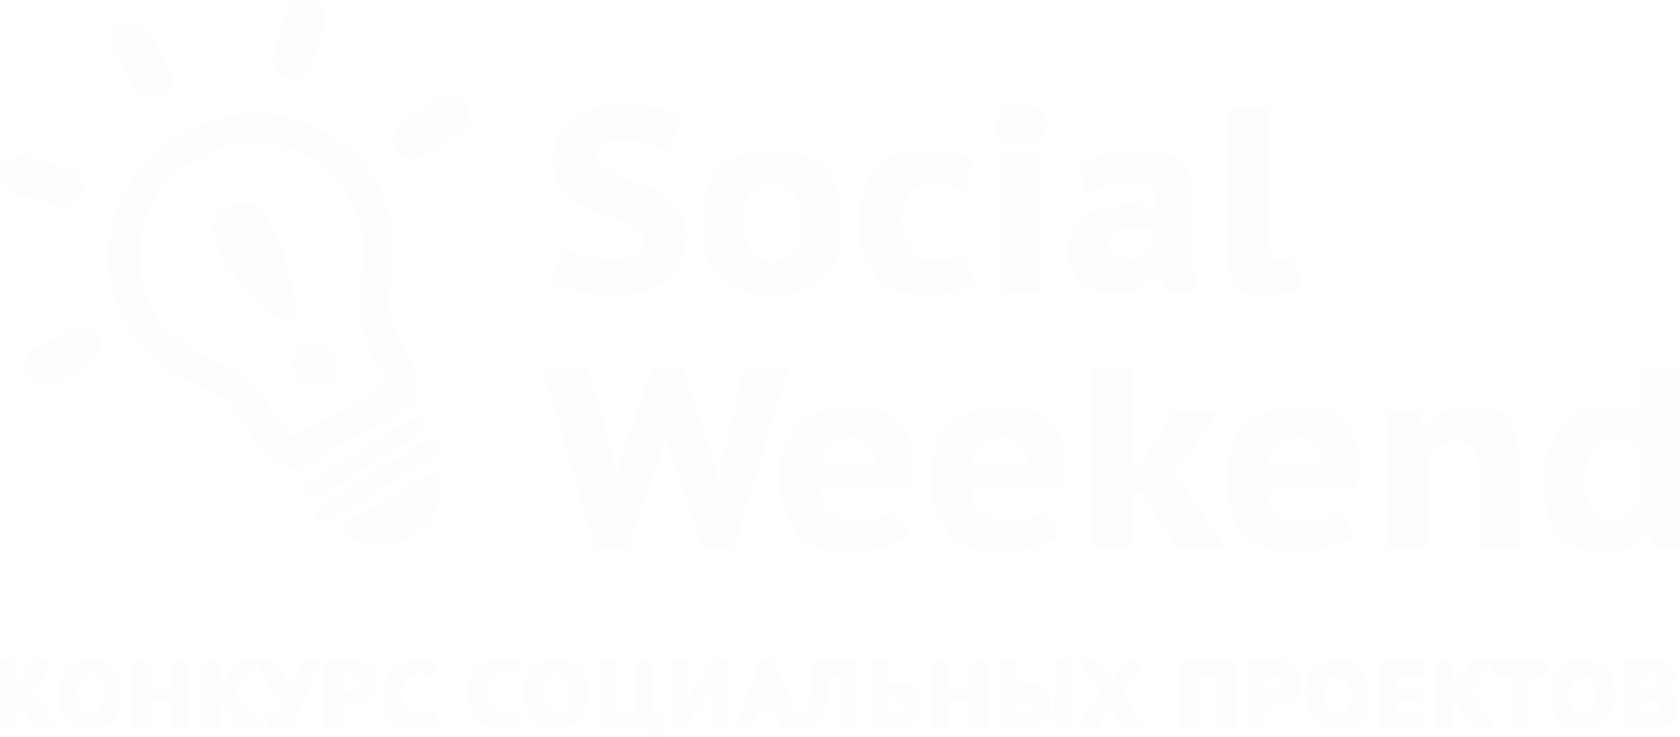 Social Weekend